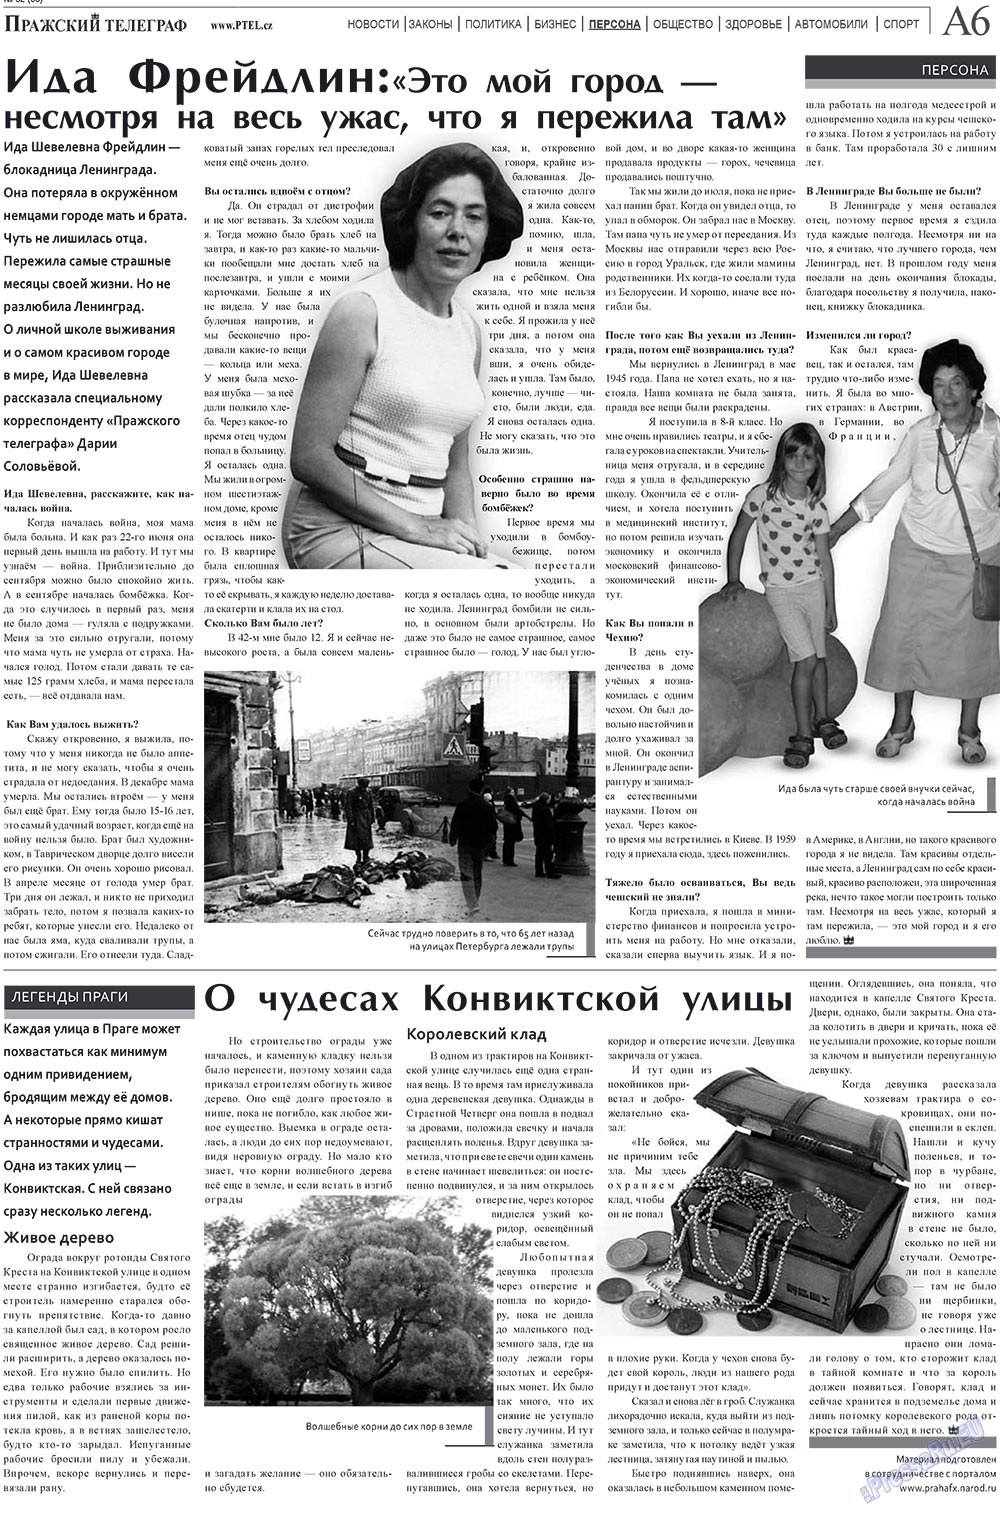 Пражский телеграф (газета). 2010 год, номер 32, стр. 6